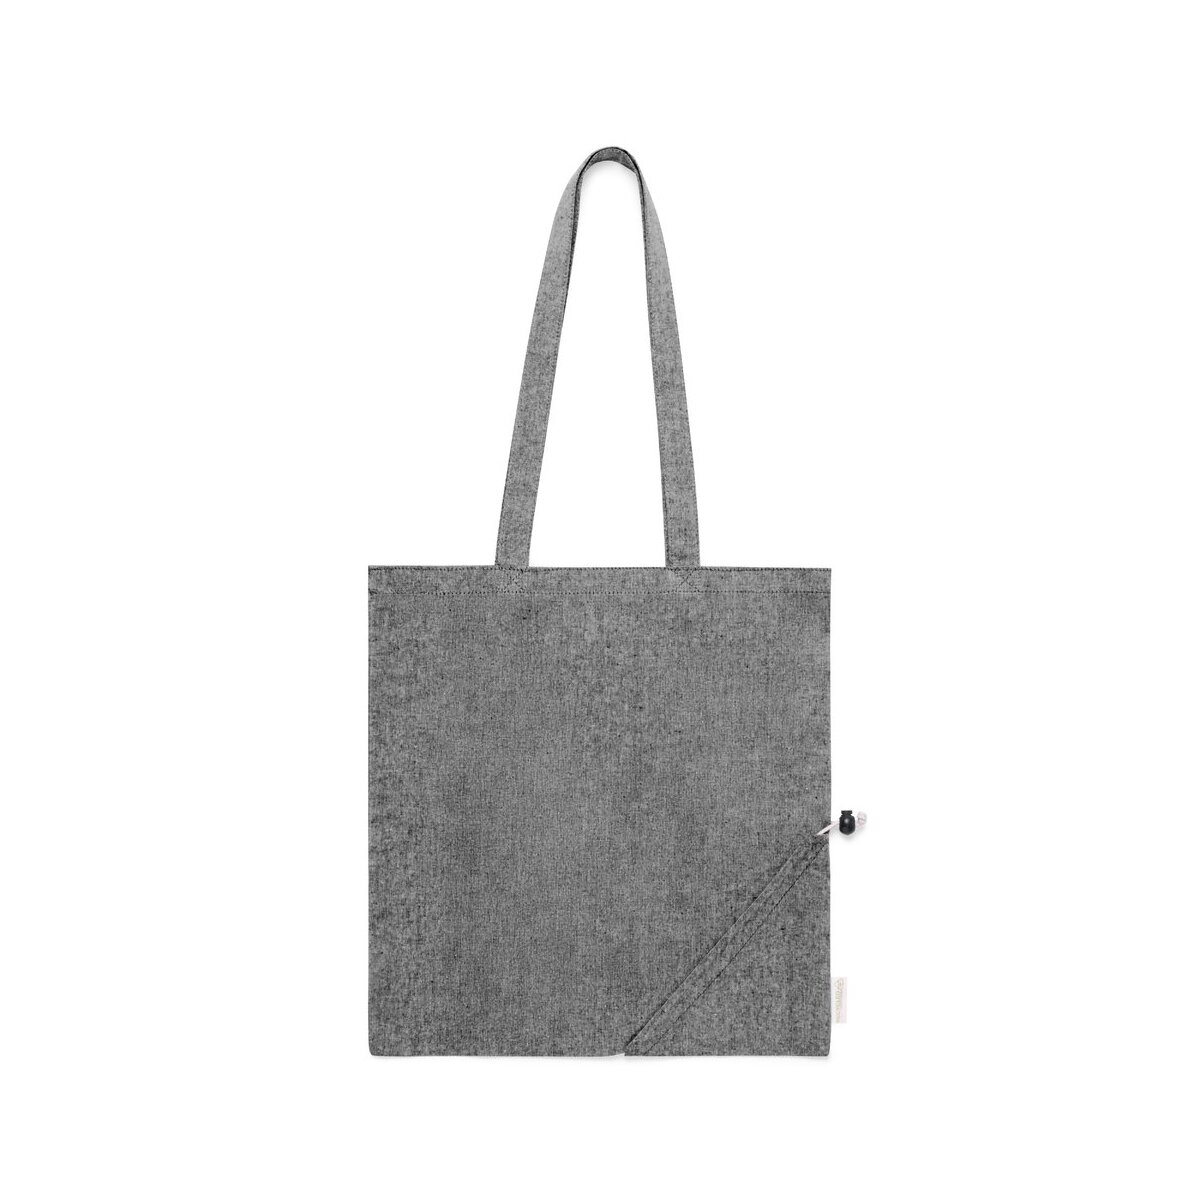 Faltbare Biyon Tasche - Nachhaltige und hochwertige Werbeartikel